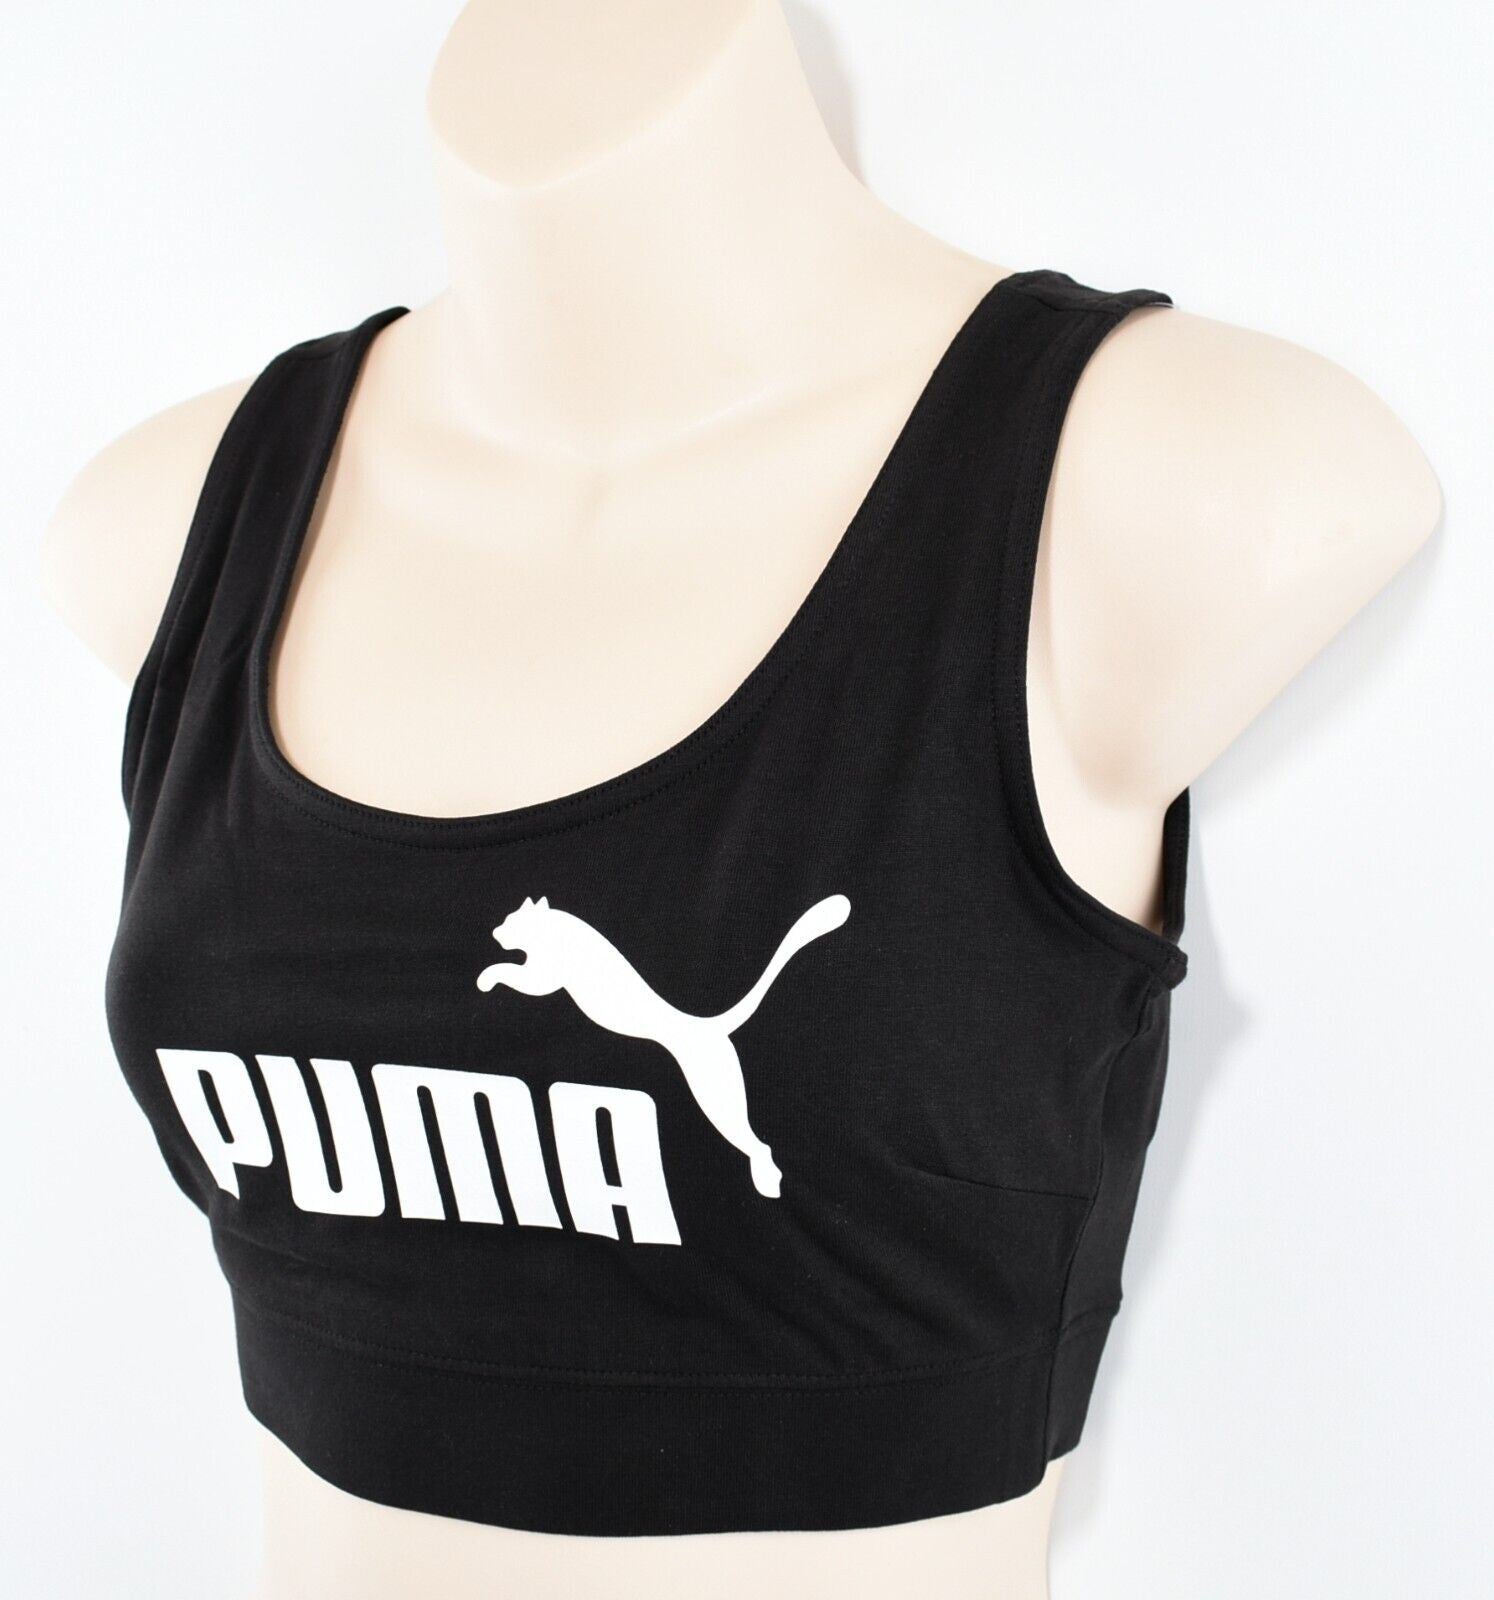 PUMA Women's Sports Bra Top, Tight Fit, Black, size L (UK 14)